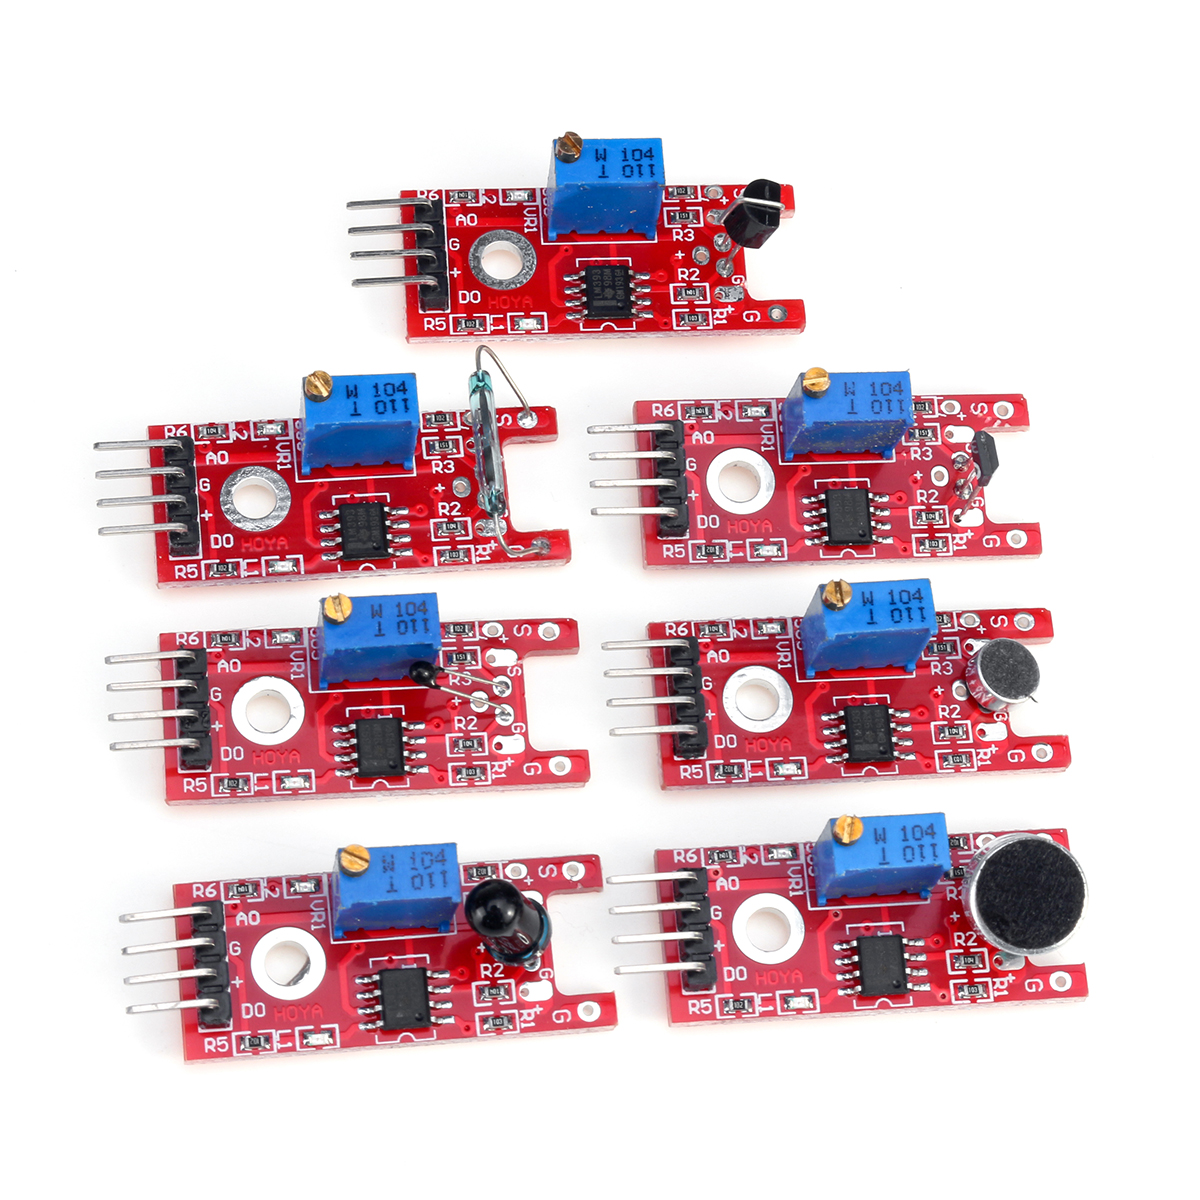 45-IN-137-IN-1-Sensor-Module-Starter-Kits-Set-For-Arduino-Raspberry-Pi-Education-Bag-Package-1619901-8